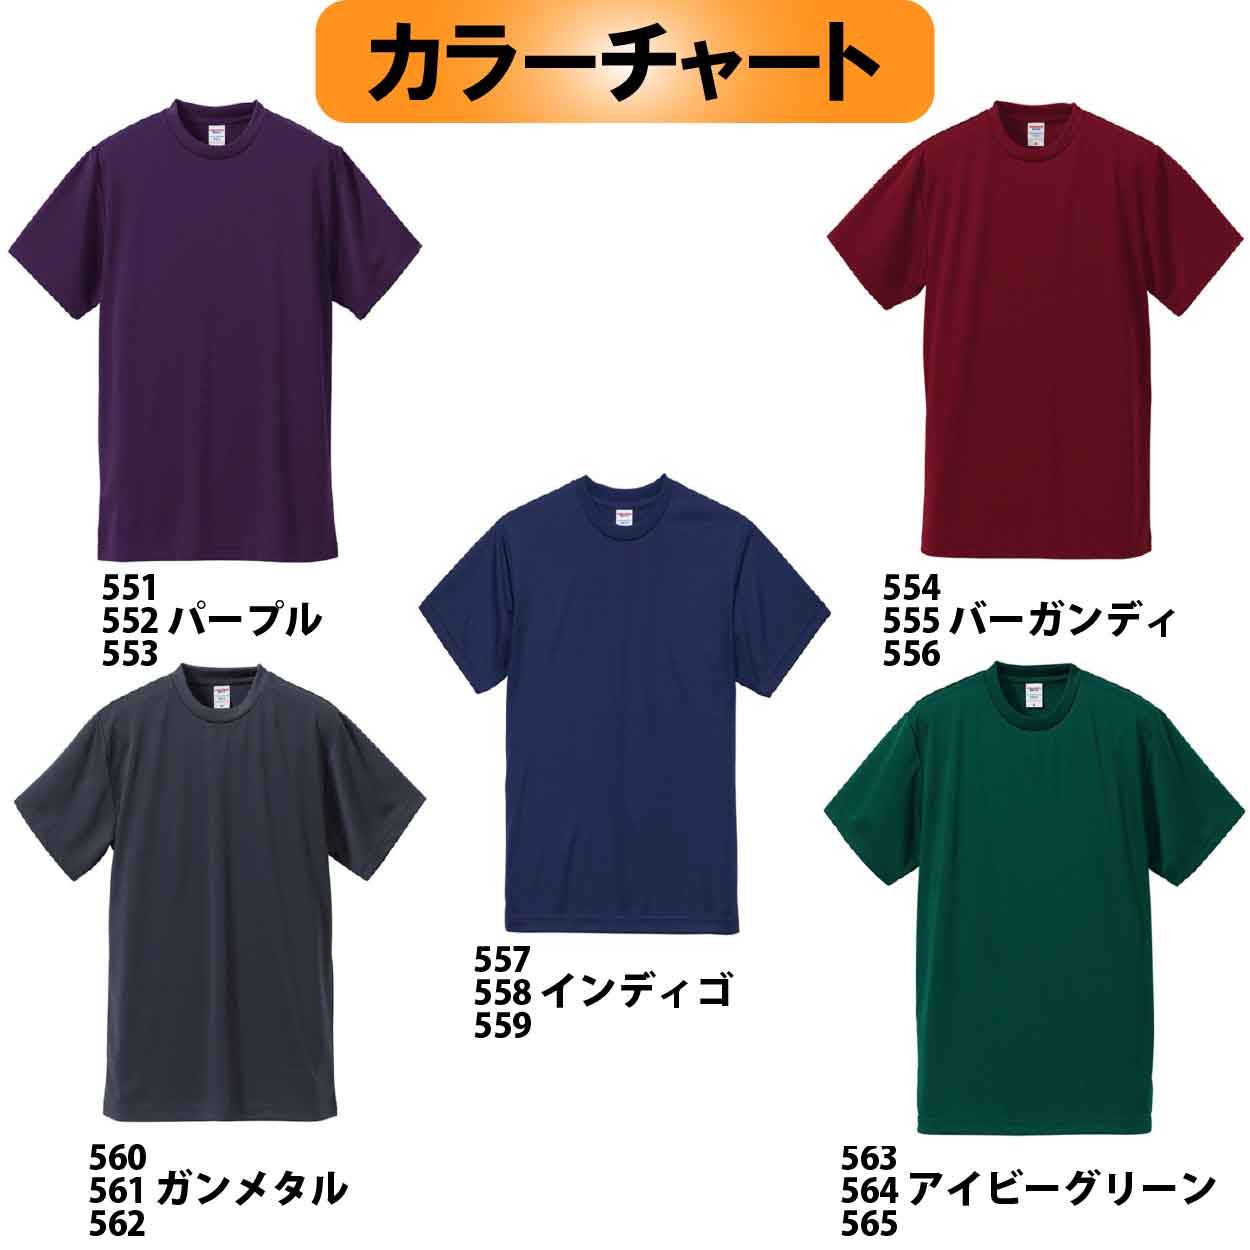 【在庫限り】５５５　JOKERオリジナル刺繍Tシャツ　L カラー:バーガンディ【限定生産】画像